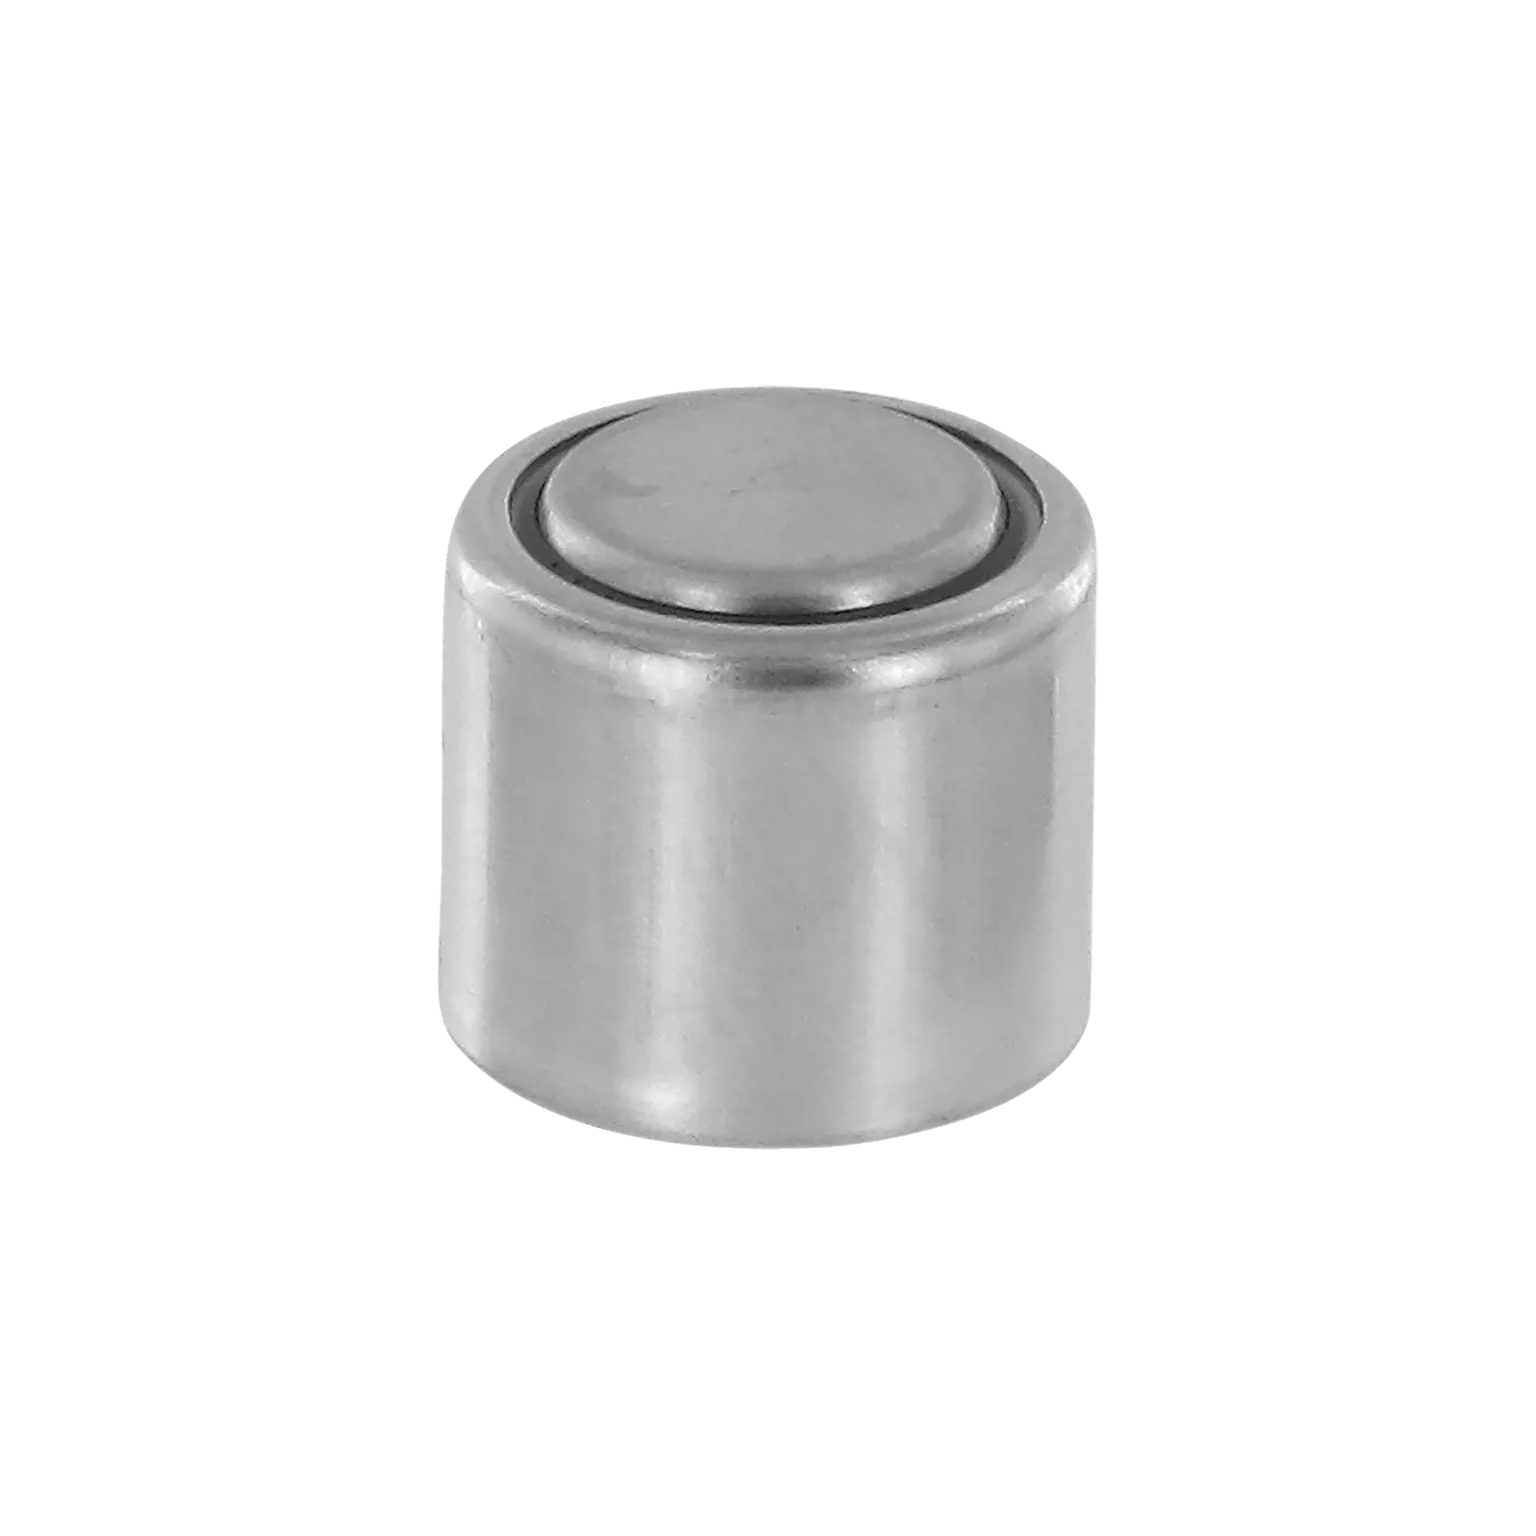 Batterie - 1/3N Lithium - 10 Stück für 30 mm Visiere (außer CompM4™/M4s™) - 1